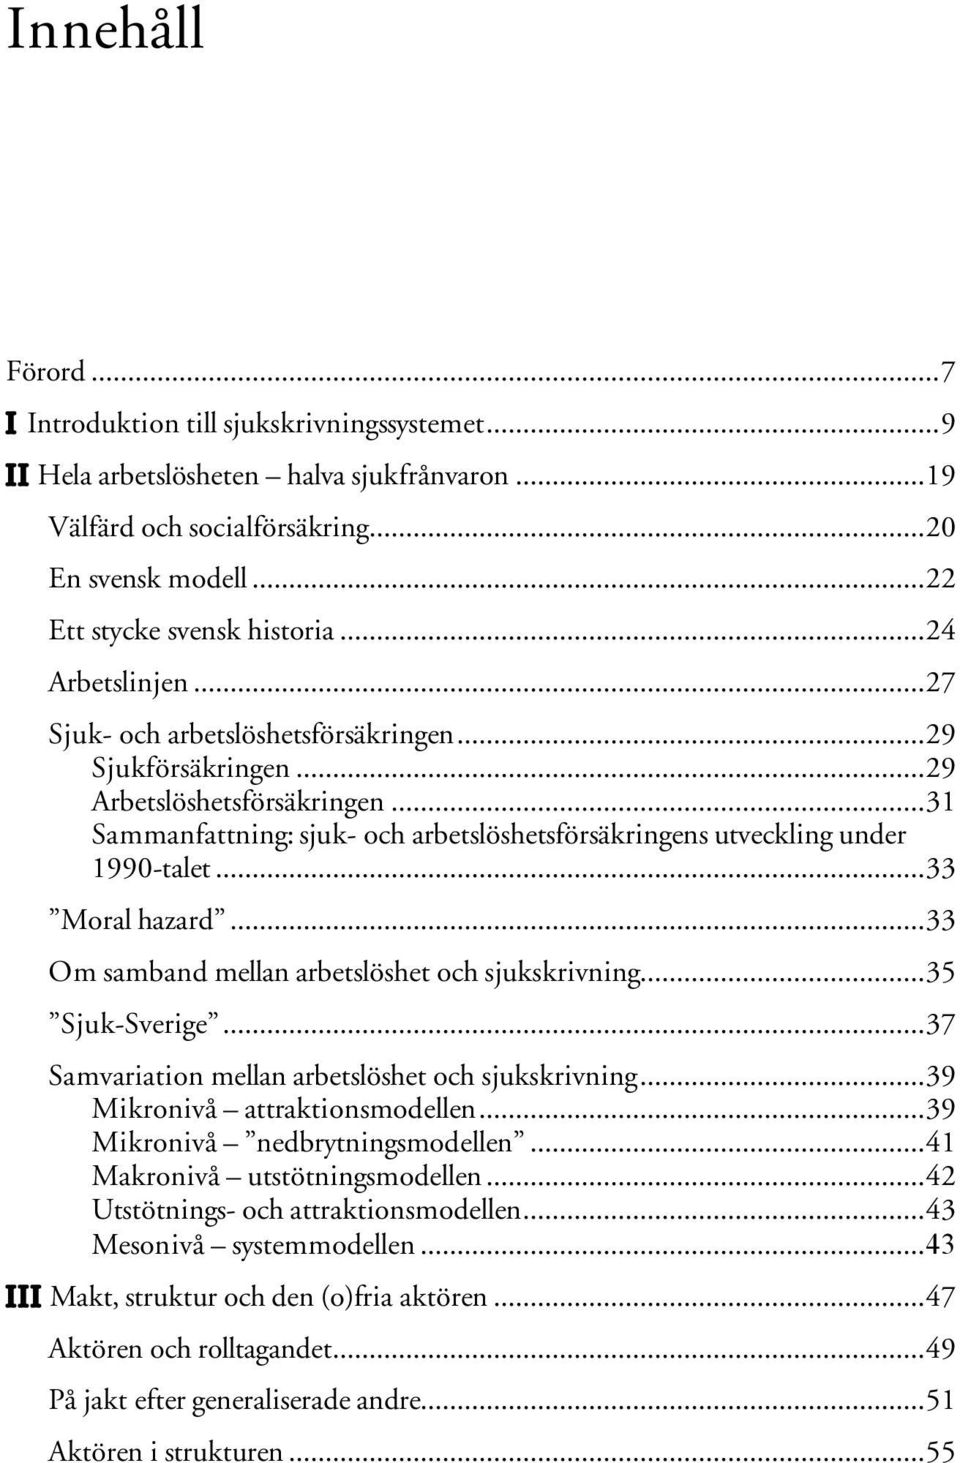 ..33 Moral hazard...33 Om samband mellan arbetslöshet och sjukskrivning...35 Sjuk-Sverige...37 Samvariation mellan arbetslöshet och sjukskrivning...39 Mikronivå attraktionsmodellen.